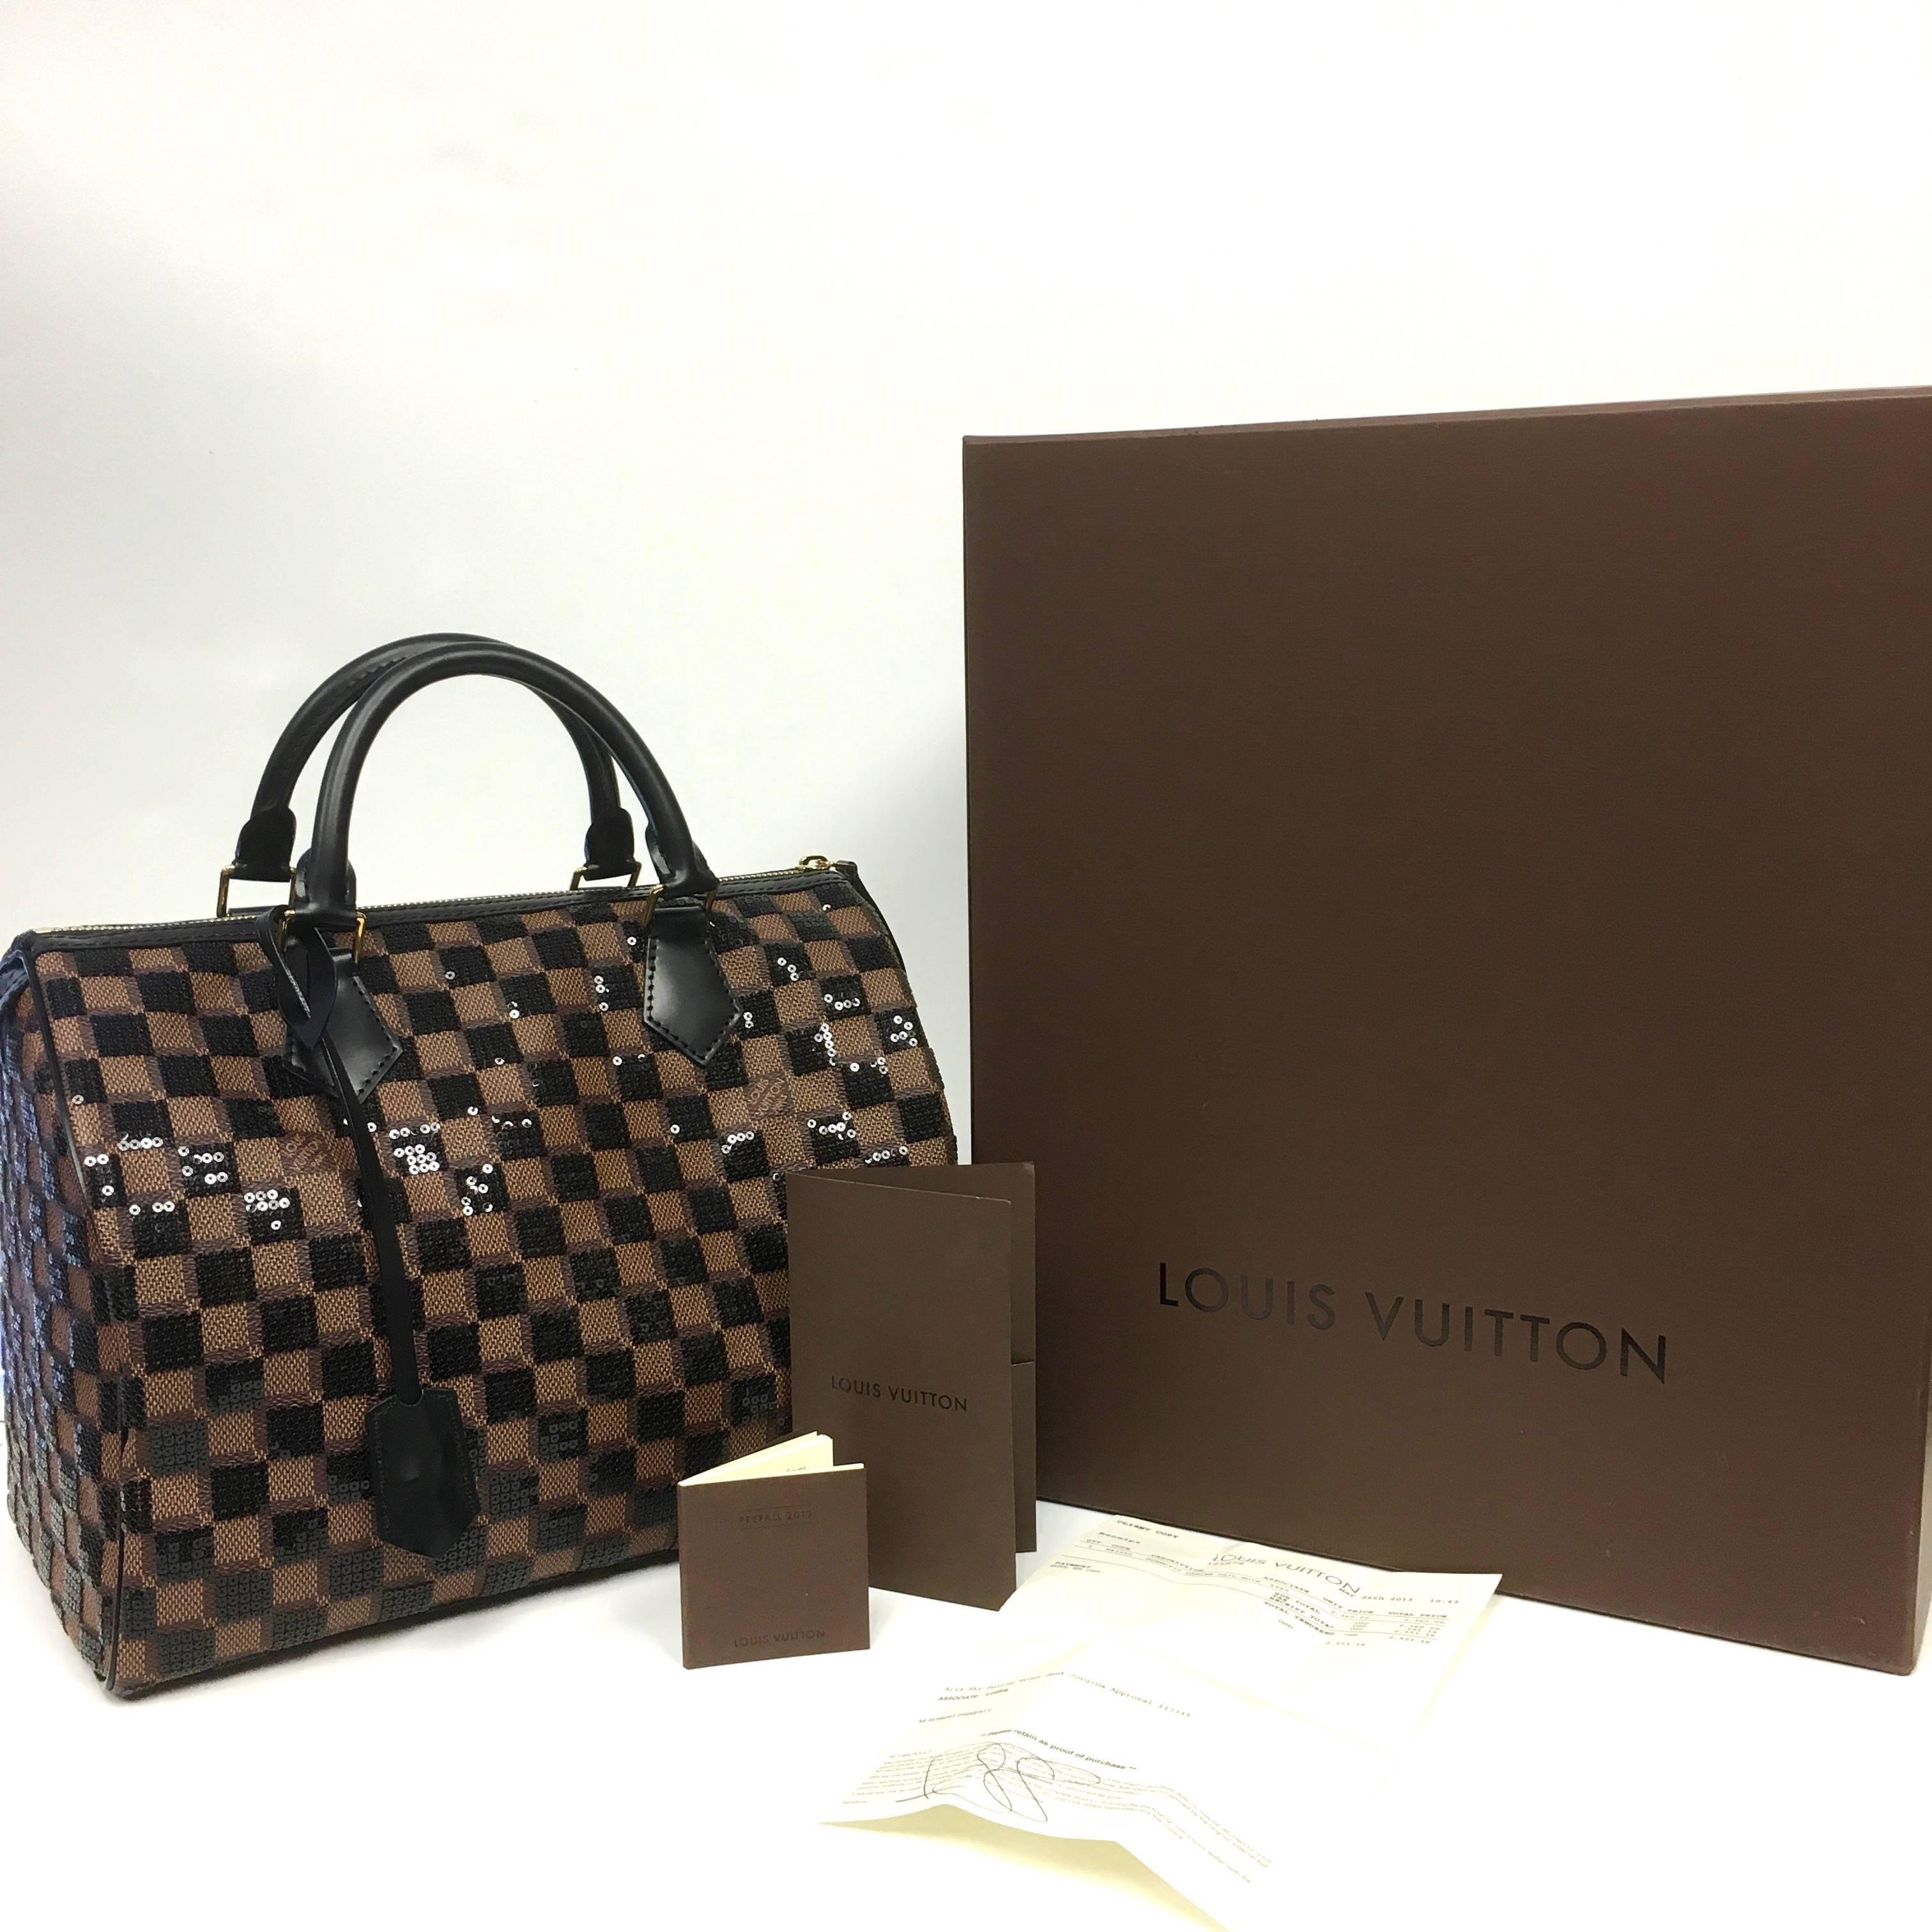 Louis Vuitton Pre-Fall 2013 Collection